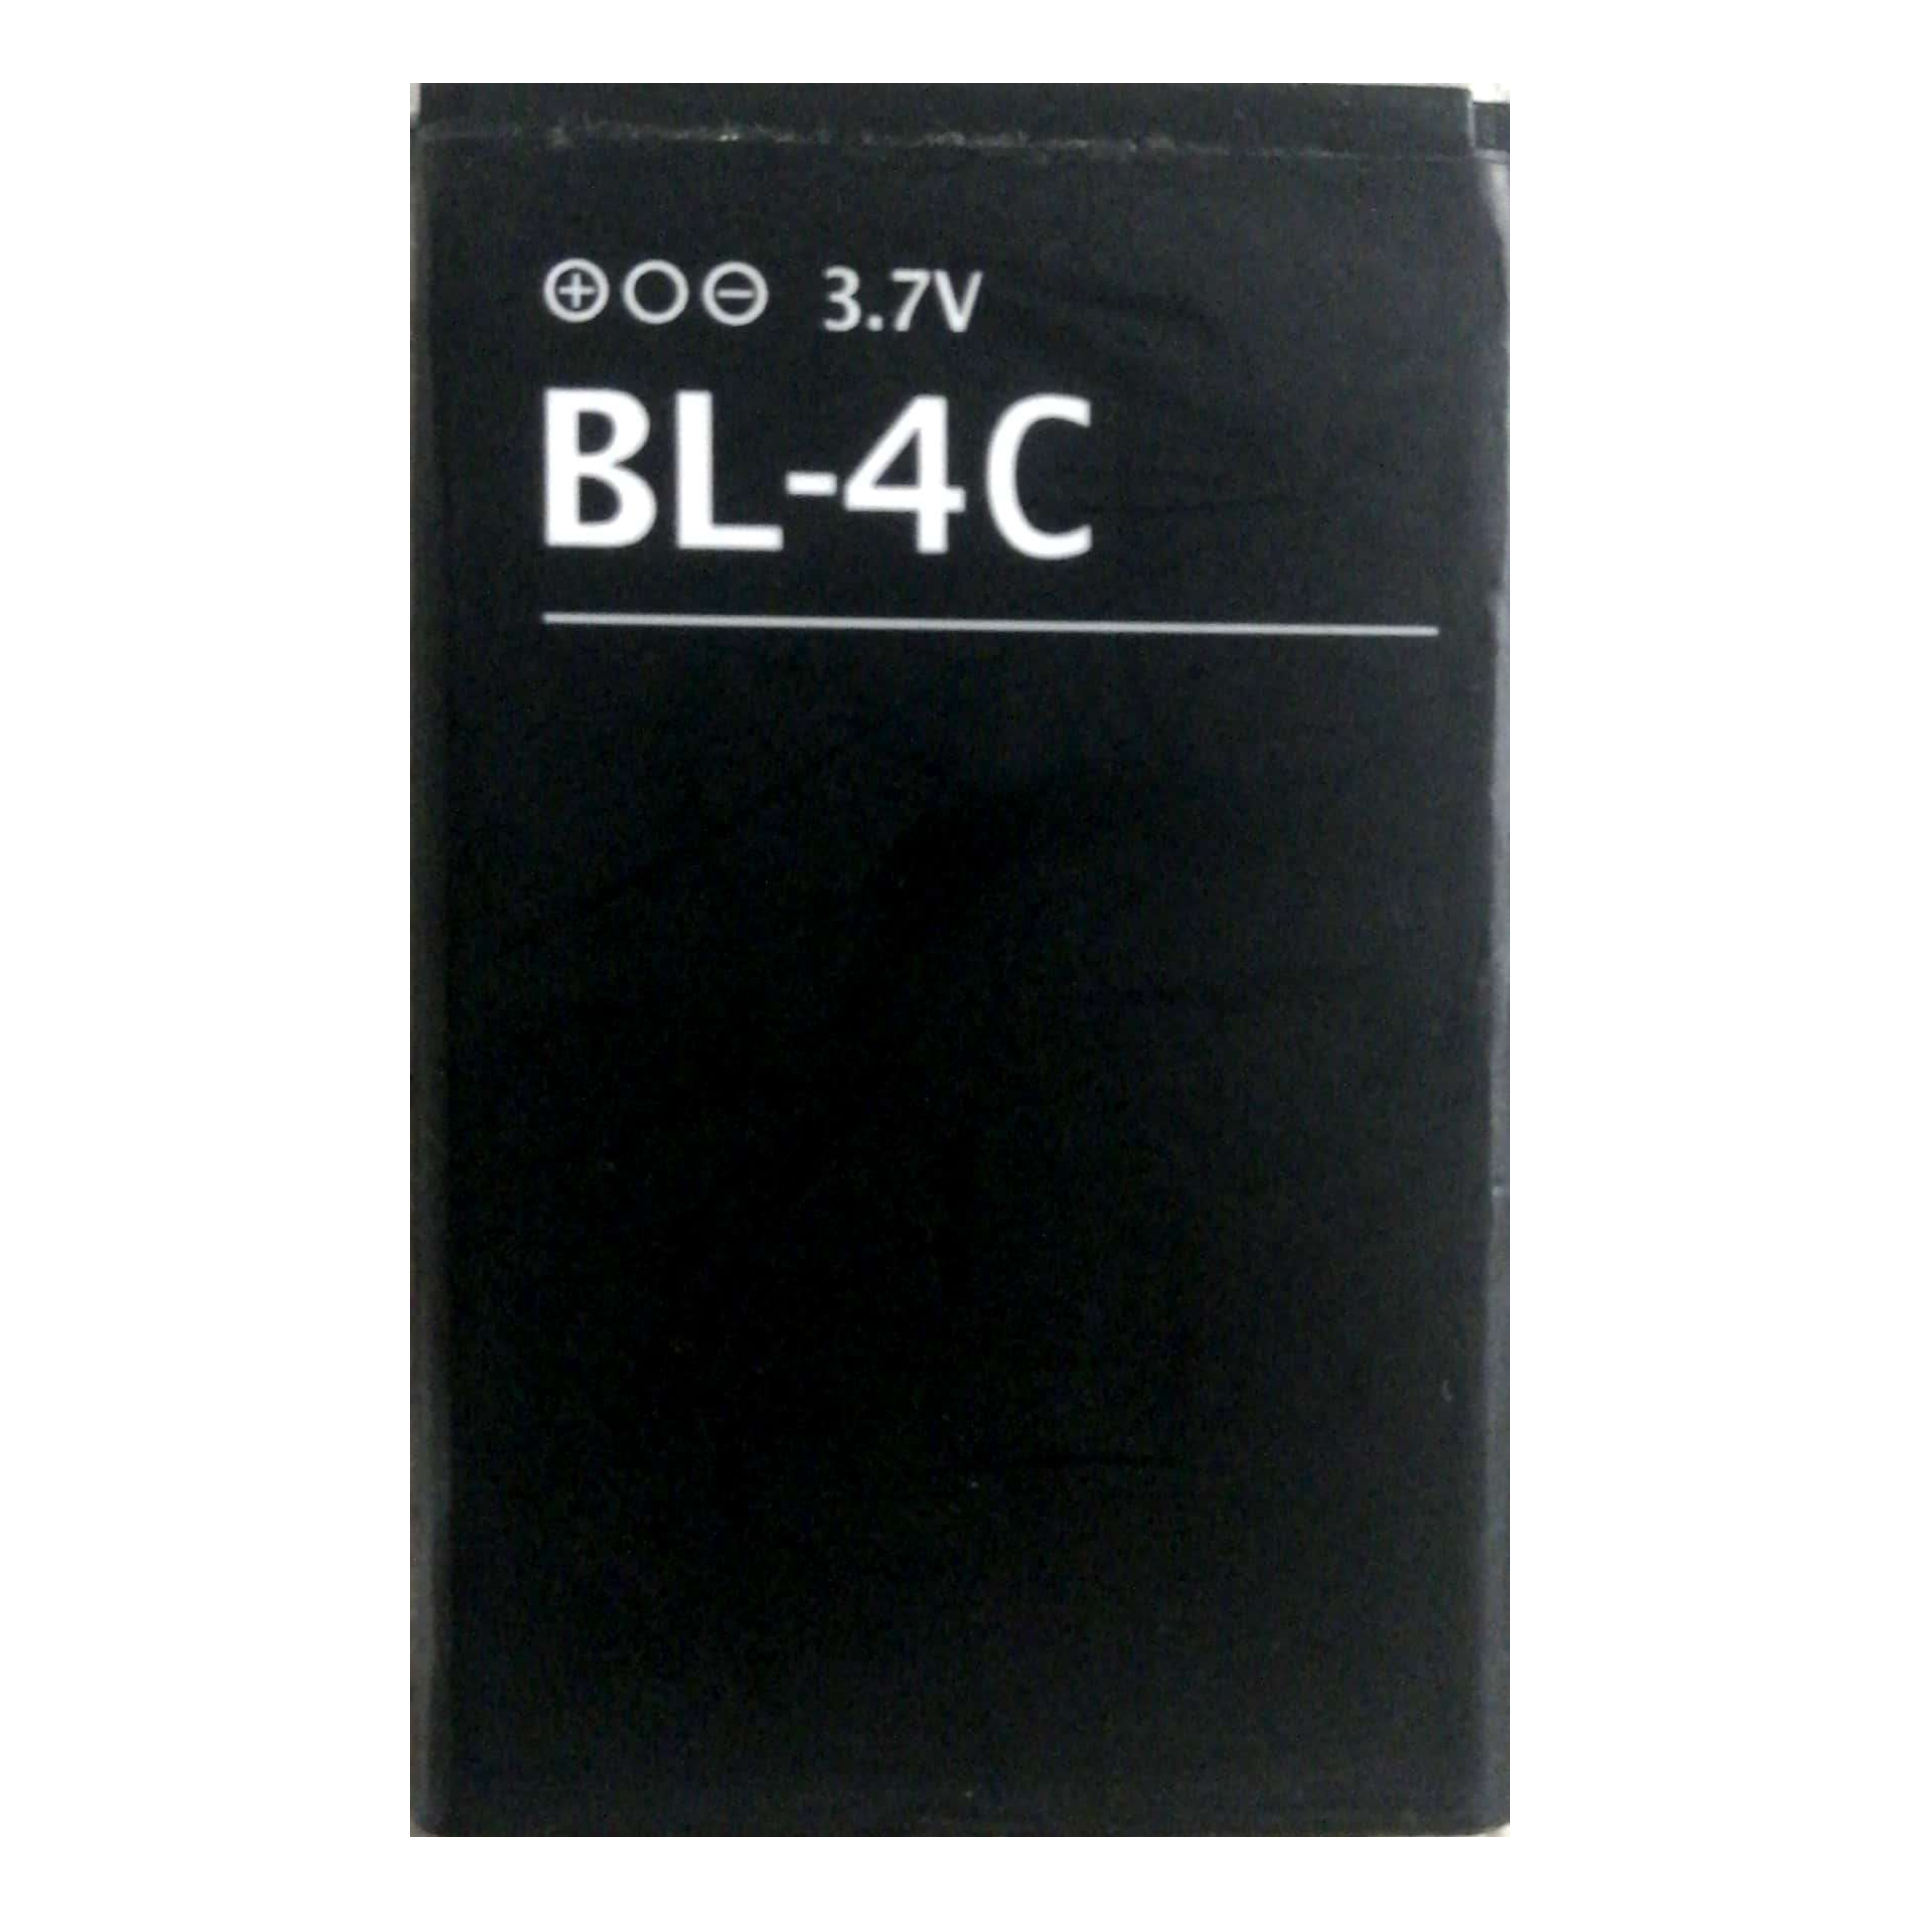 باتری موبایل مدل bl-4c  ظرفیت 1500 میلی آمپر ساعت مناسب برای گوشی موبایل نوکیا 6170